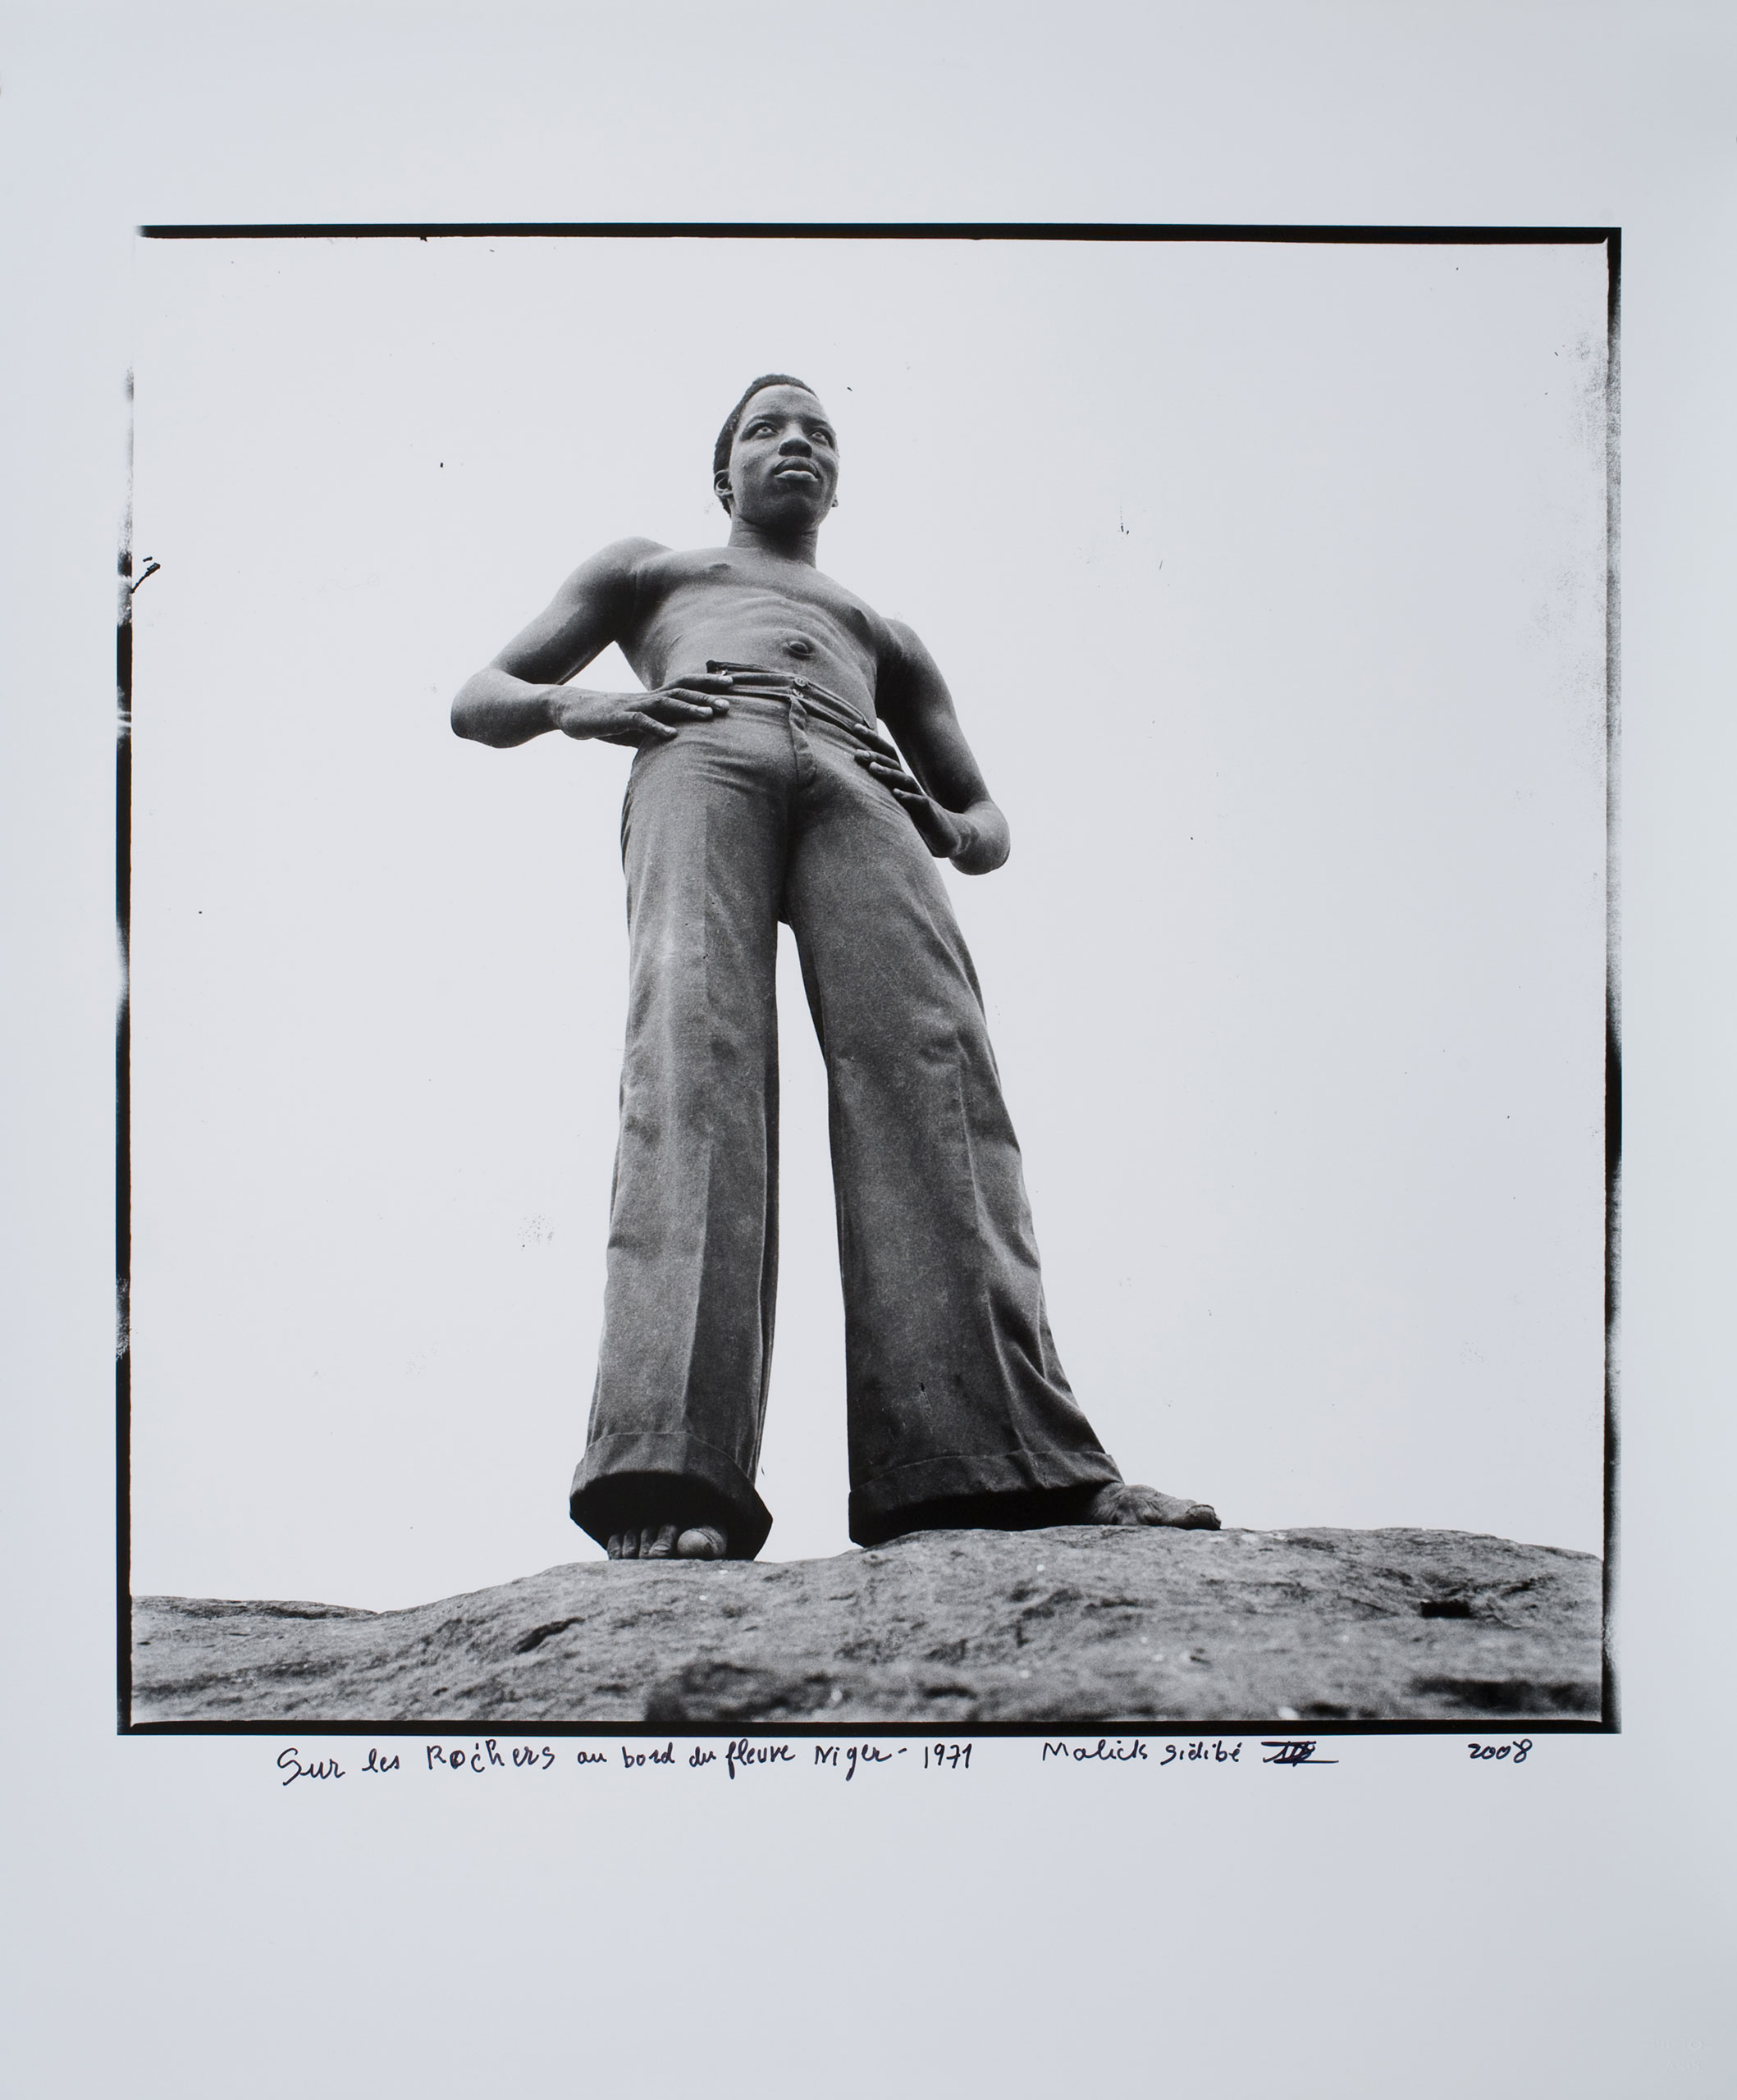 Photograph by Malick Sidibe, Sur les rochers au bord du fleuve Niger, 1971-2008.